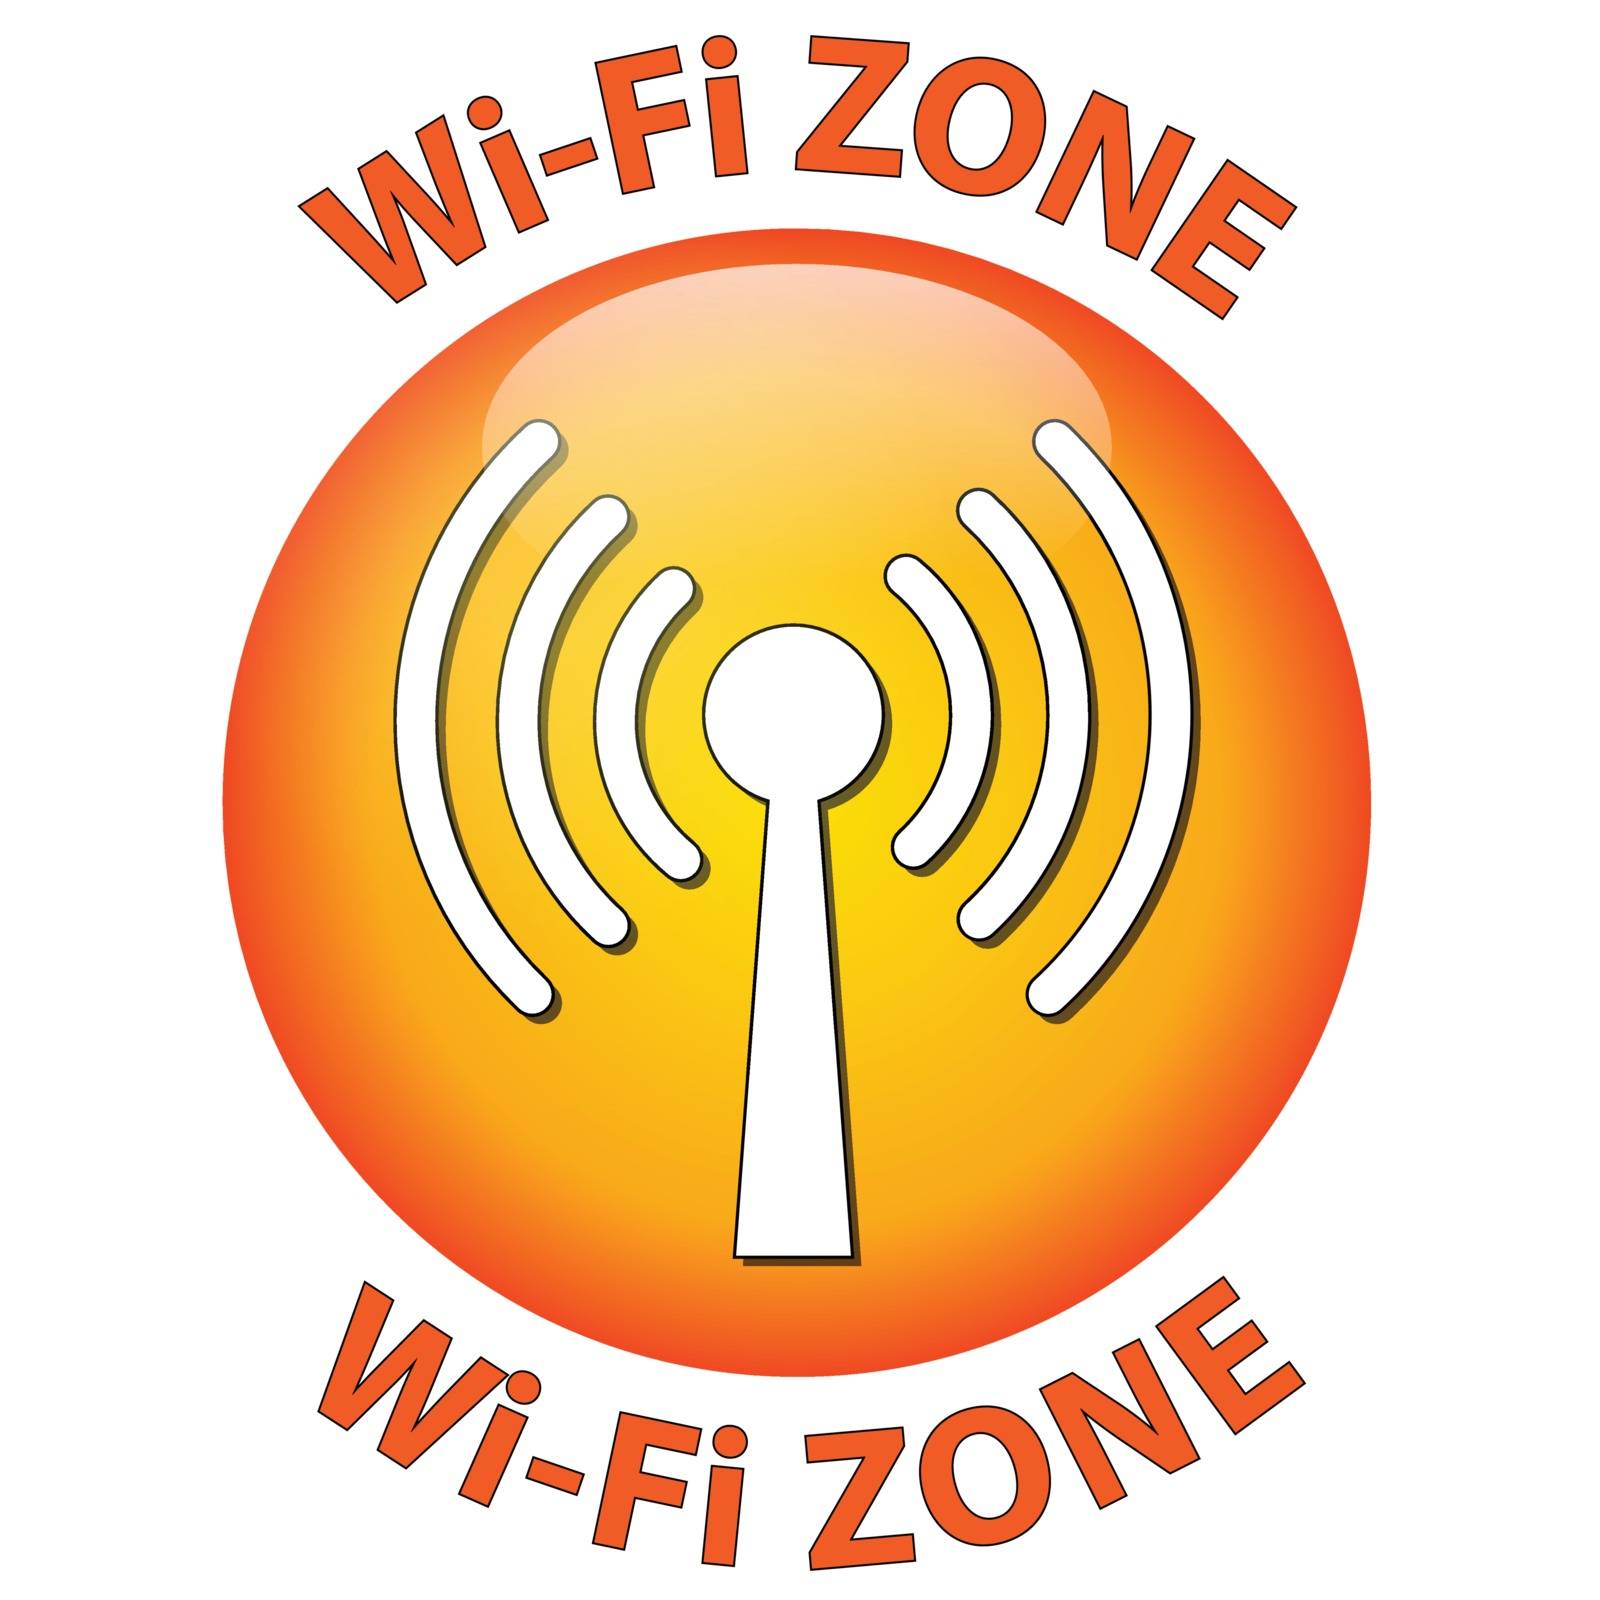 Wi-Fi zone